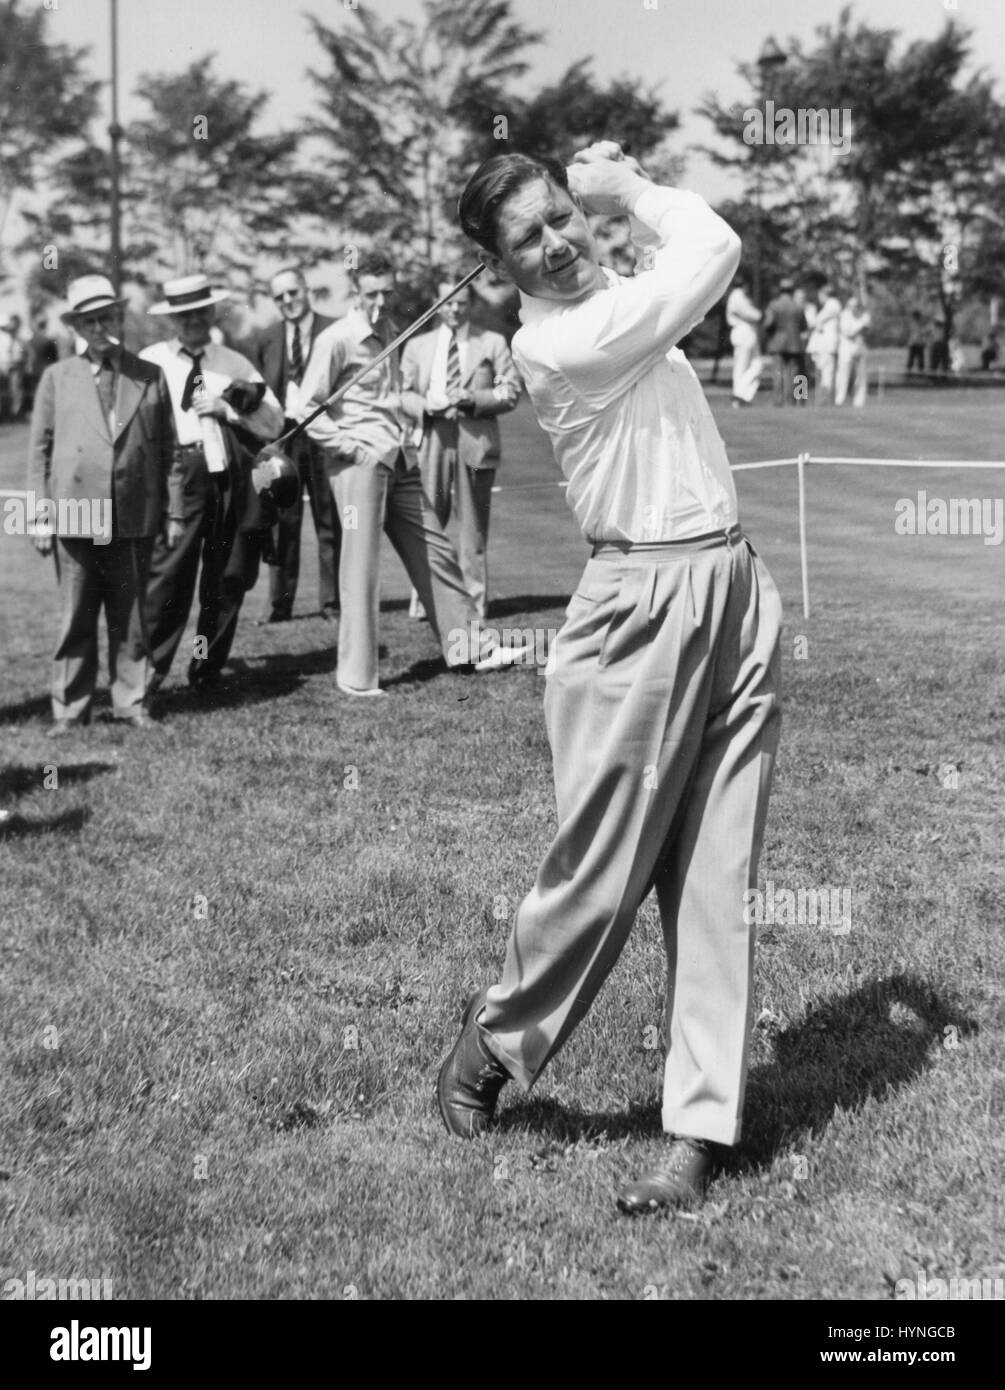 Golfeur professionnel conduite Byron Nelson une balle de golf au cours d'un match d'exhibition. Vers 1940. Banque D'Images